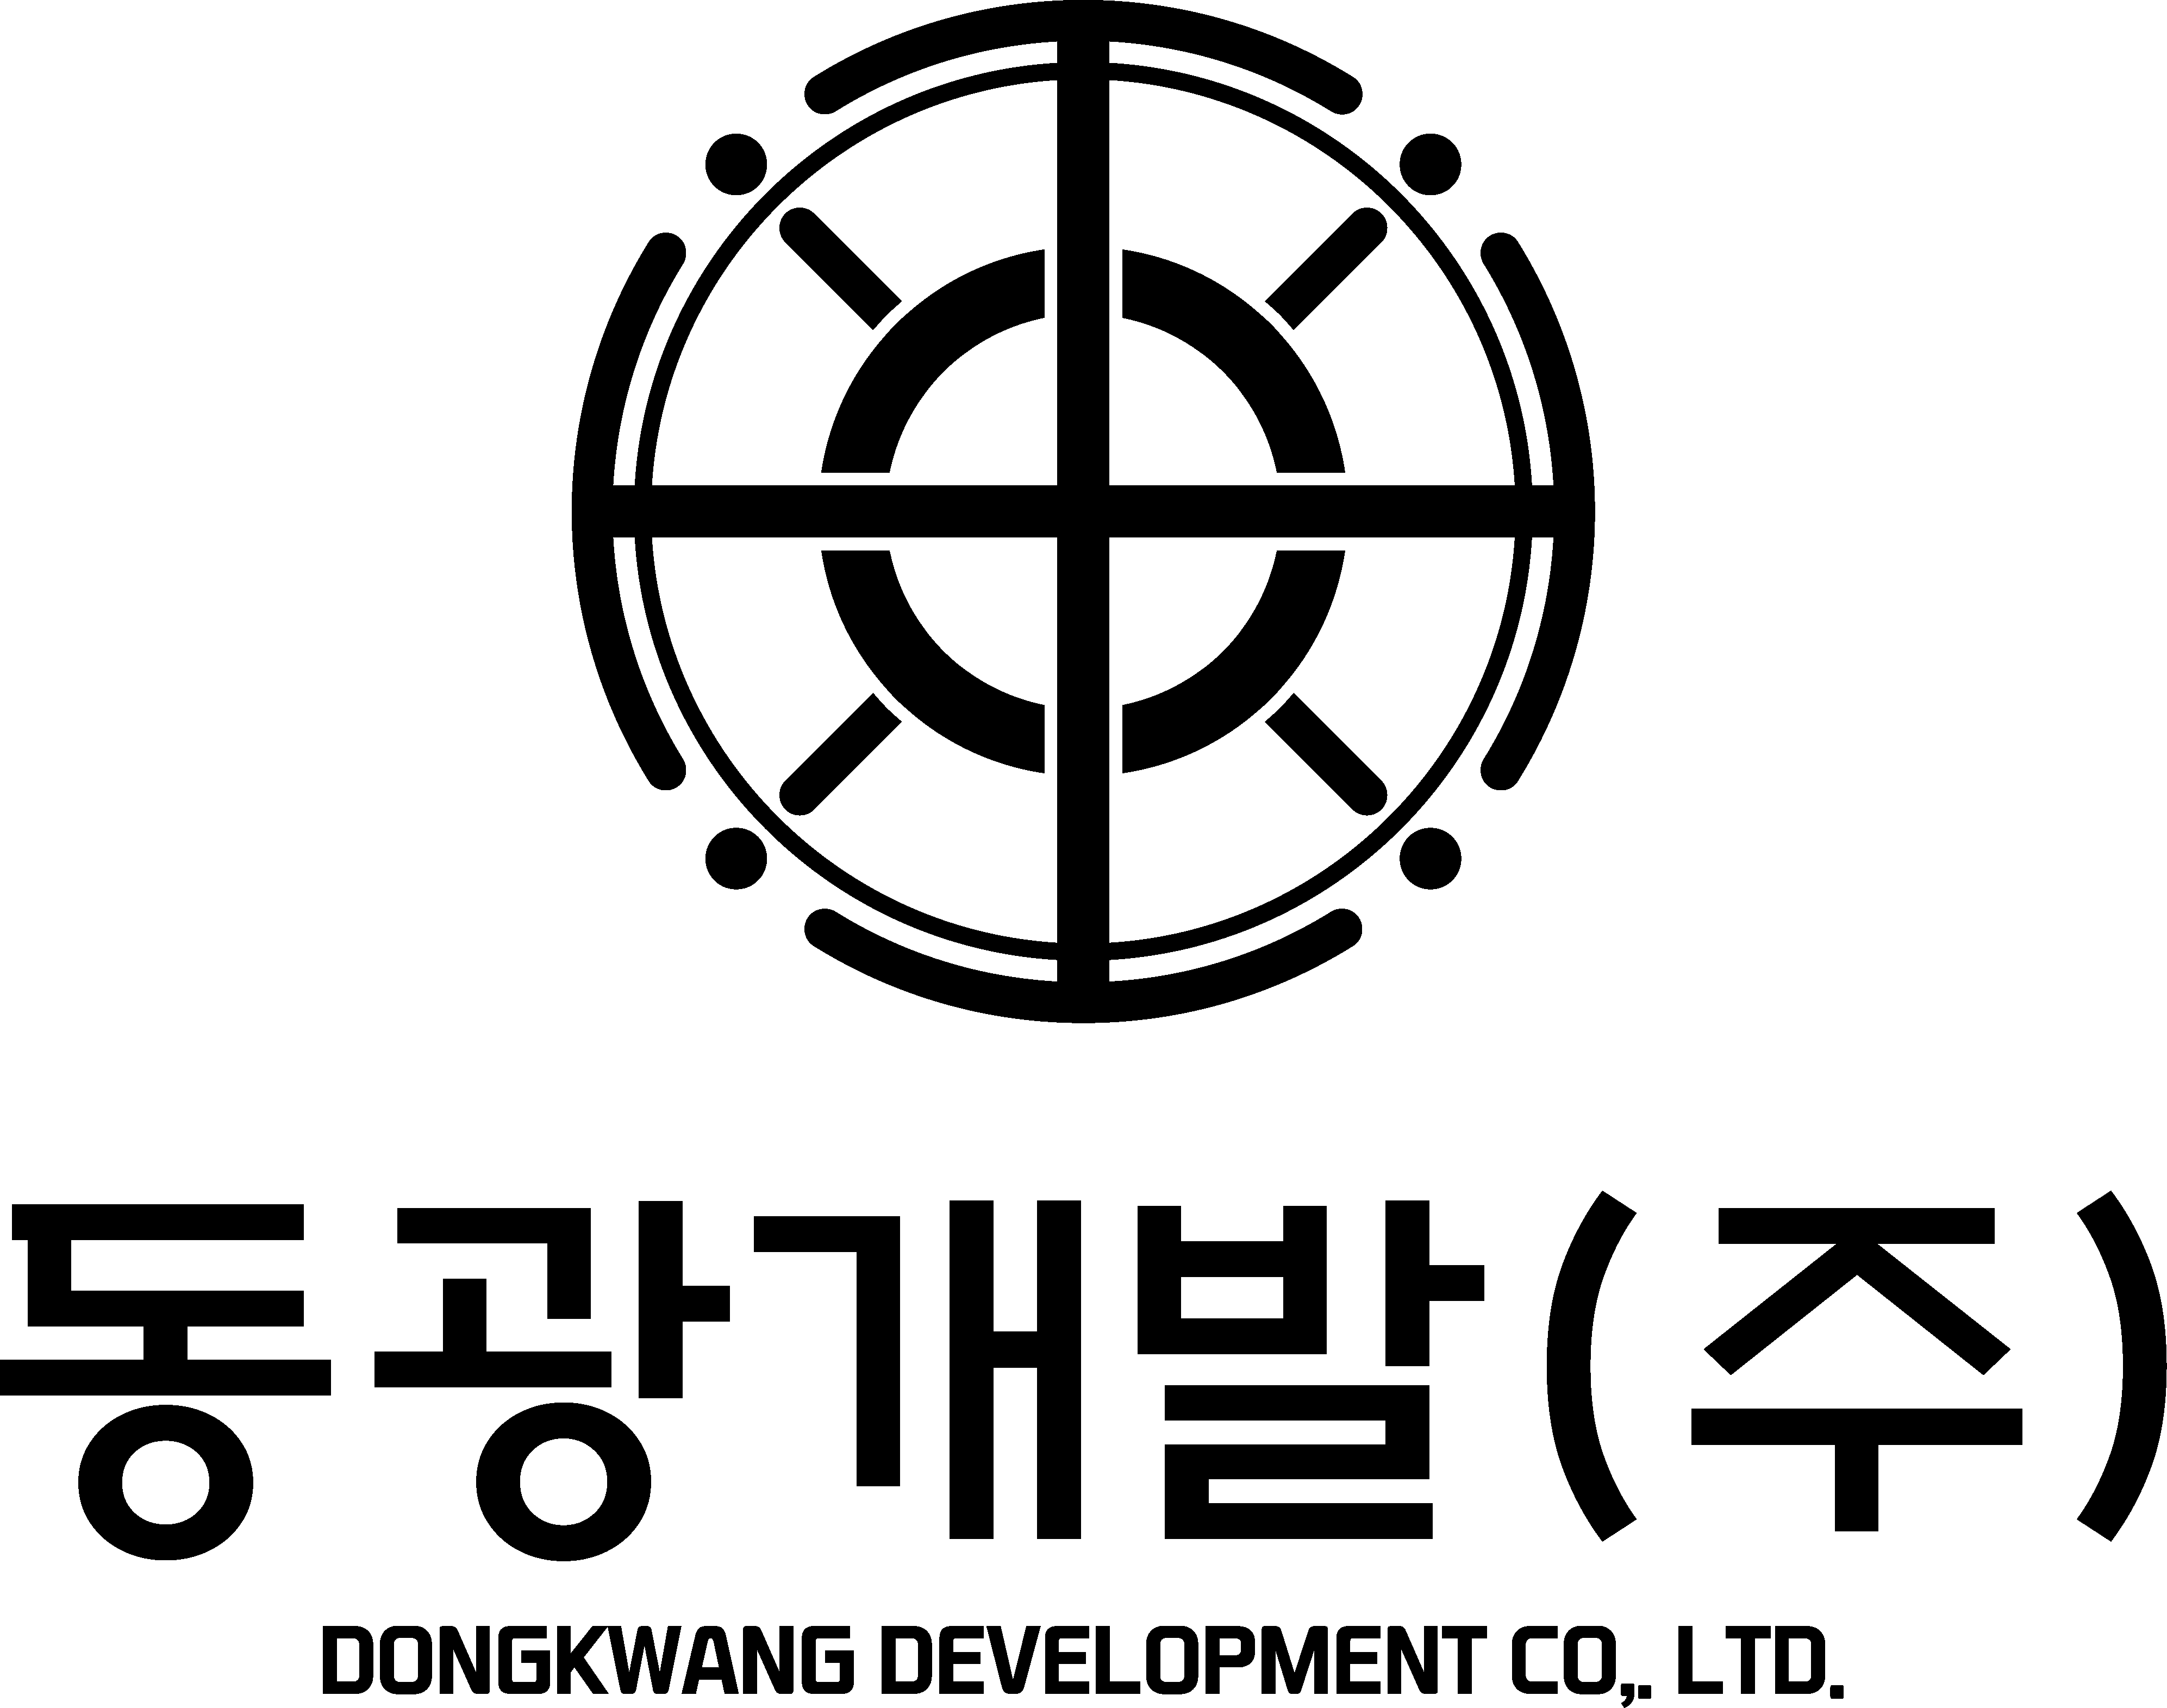 동광개발의 계열사 동광개발(주)의 로고